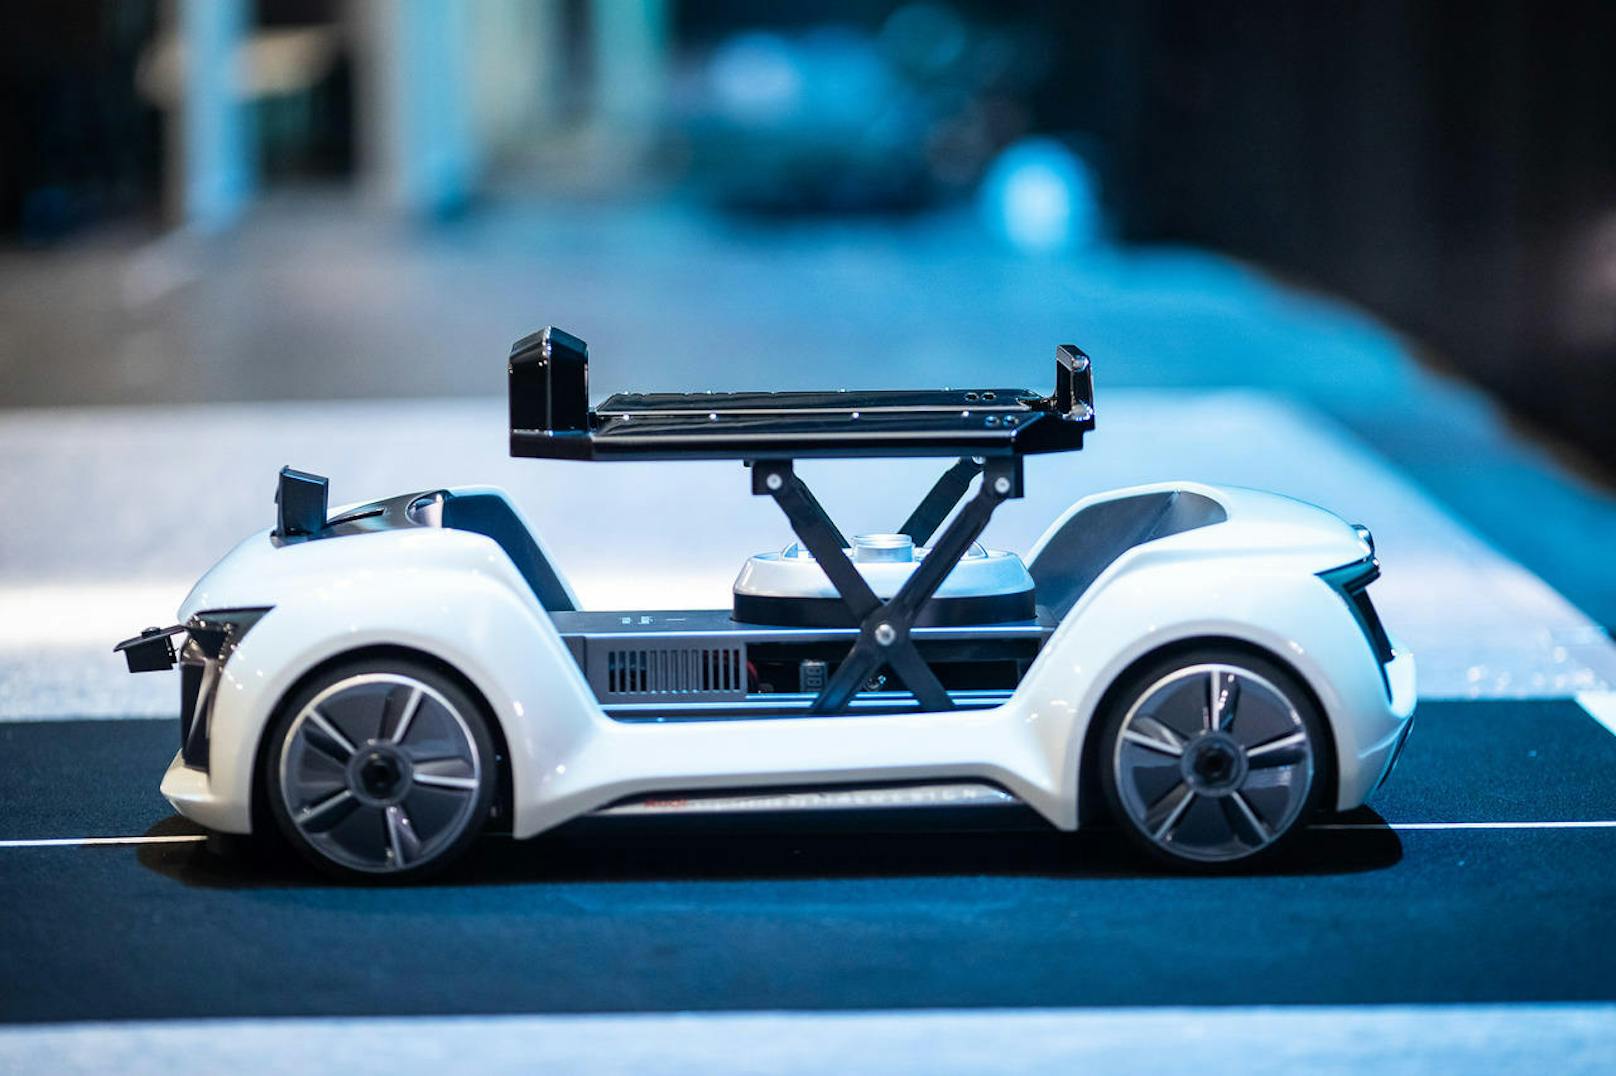 Fahrbarer Untersatz: Ein Roboter-Wagen mit elektrischem Antrieb übernimmt die Passagierkabine oder übergibt sie an die Drohne.